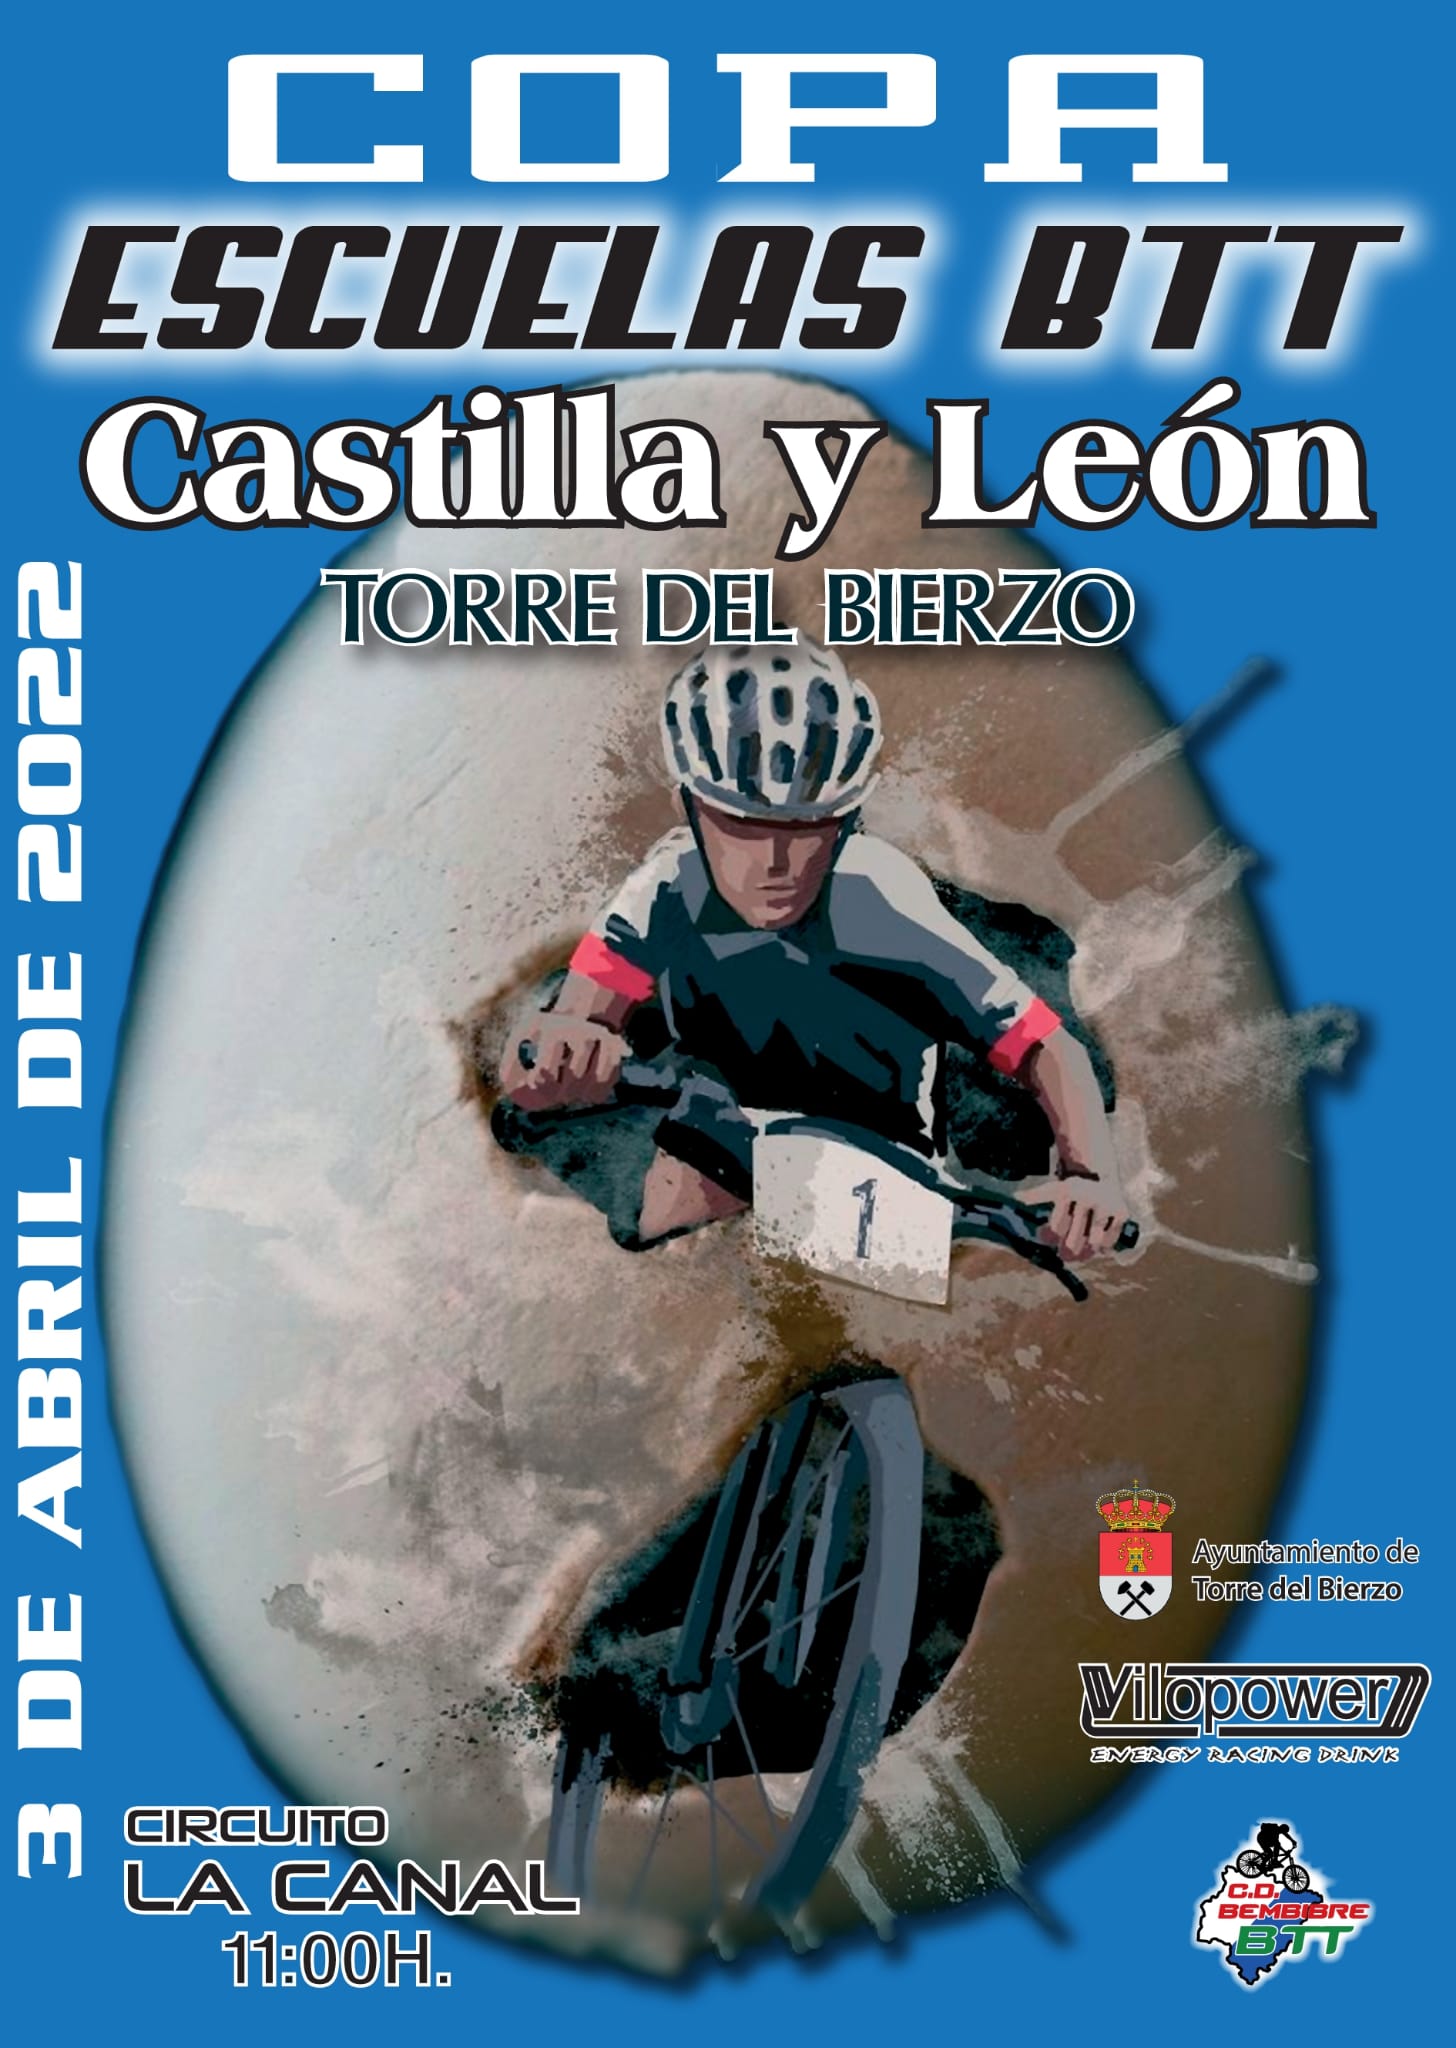 La Copa de Escuelas  de BTT Castilla y León regresa este domingo a Torre del Bierzo 2